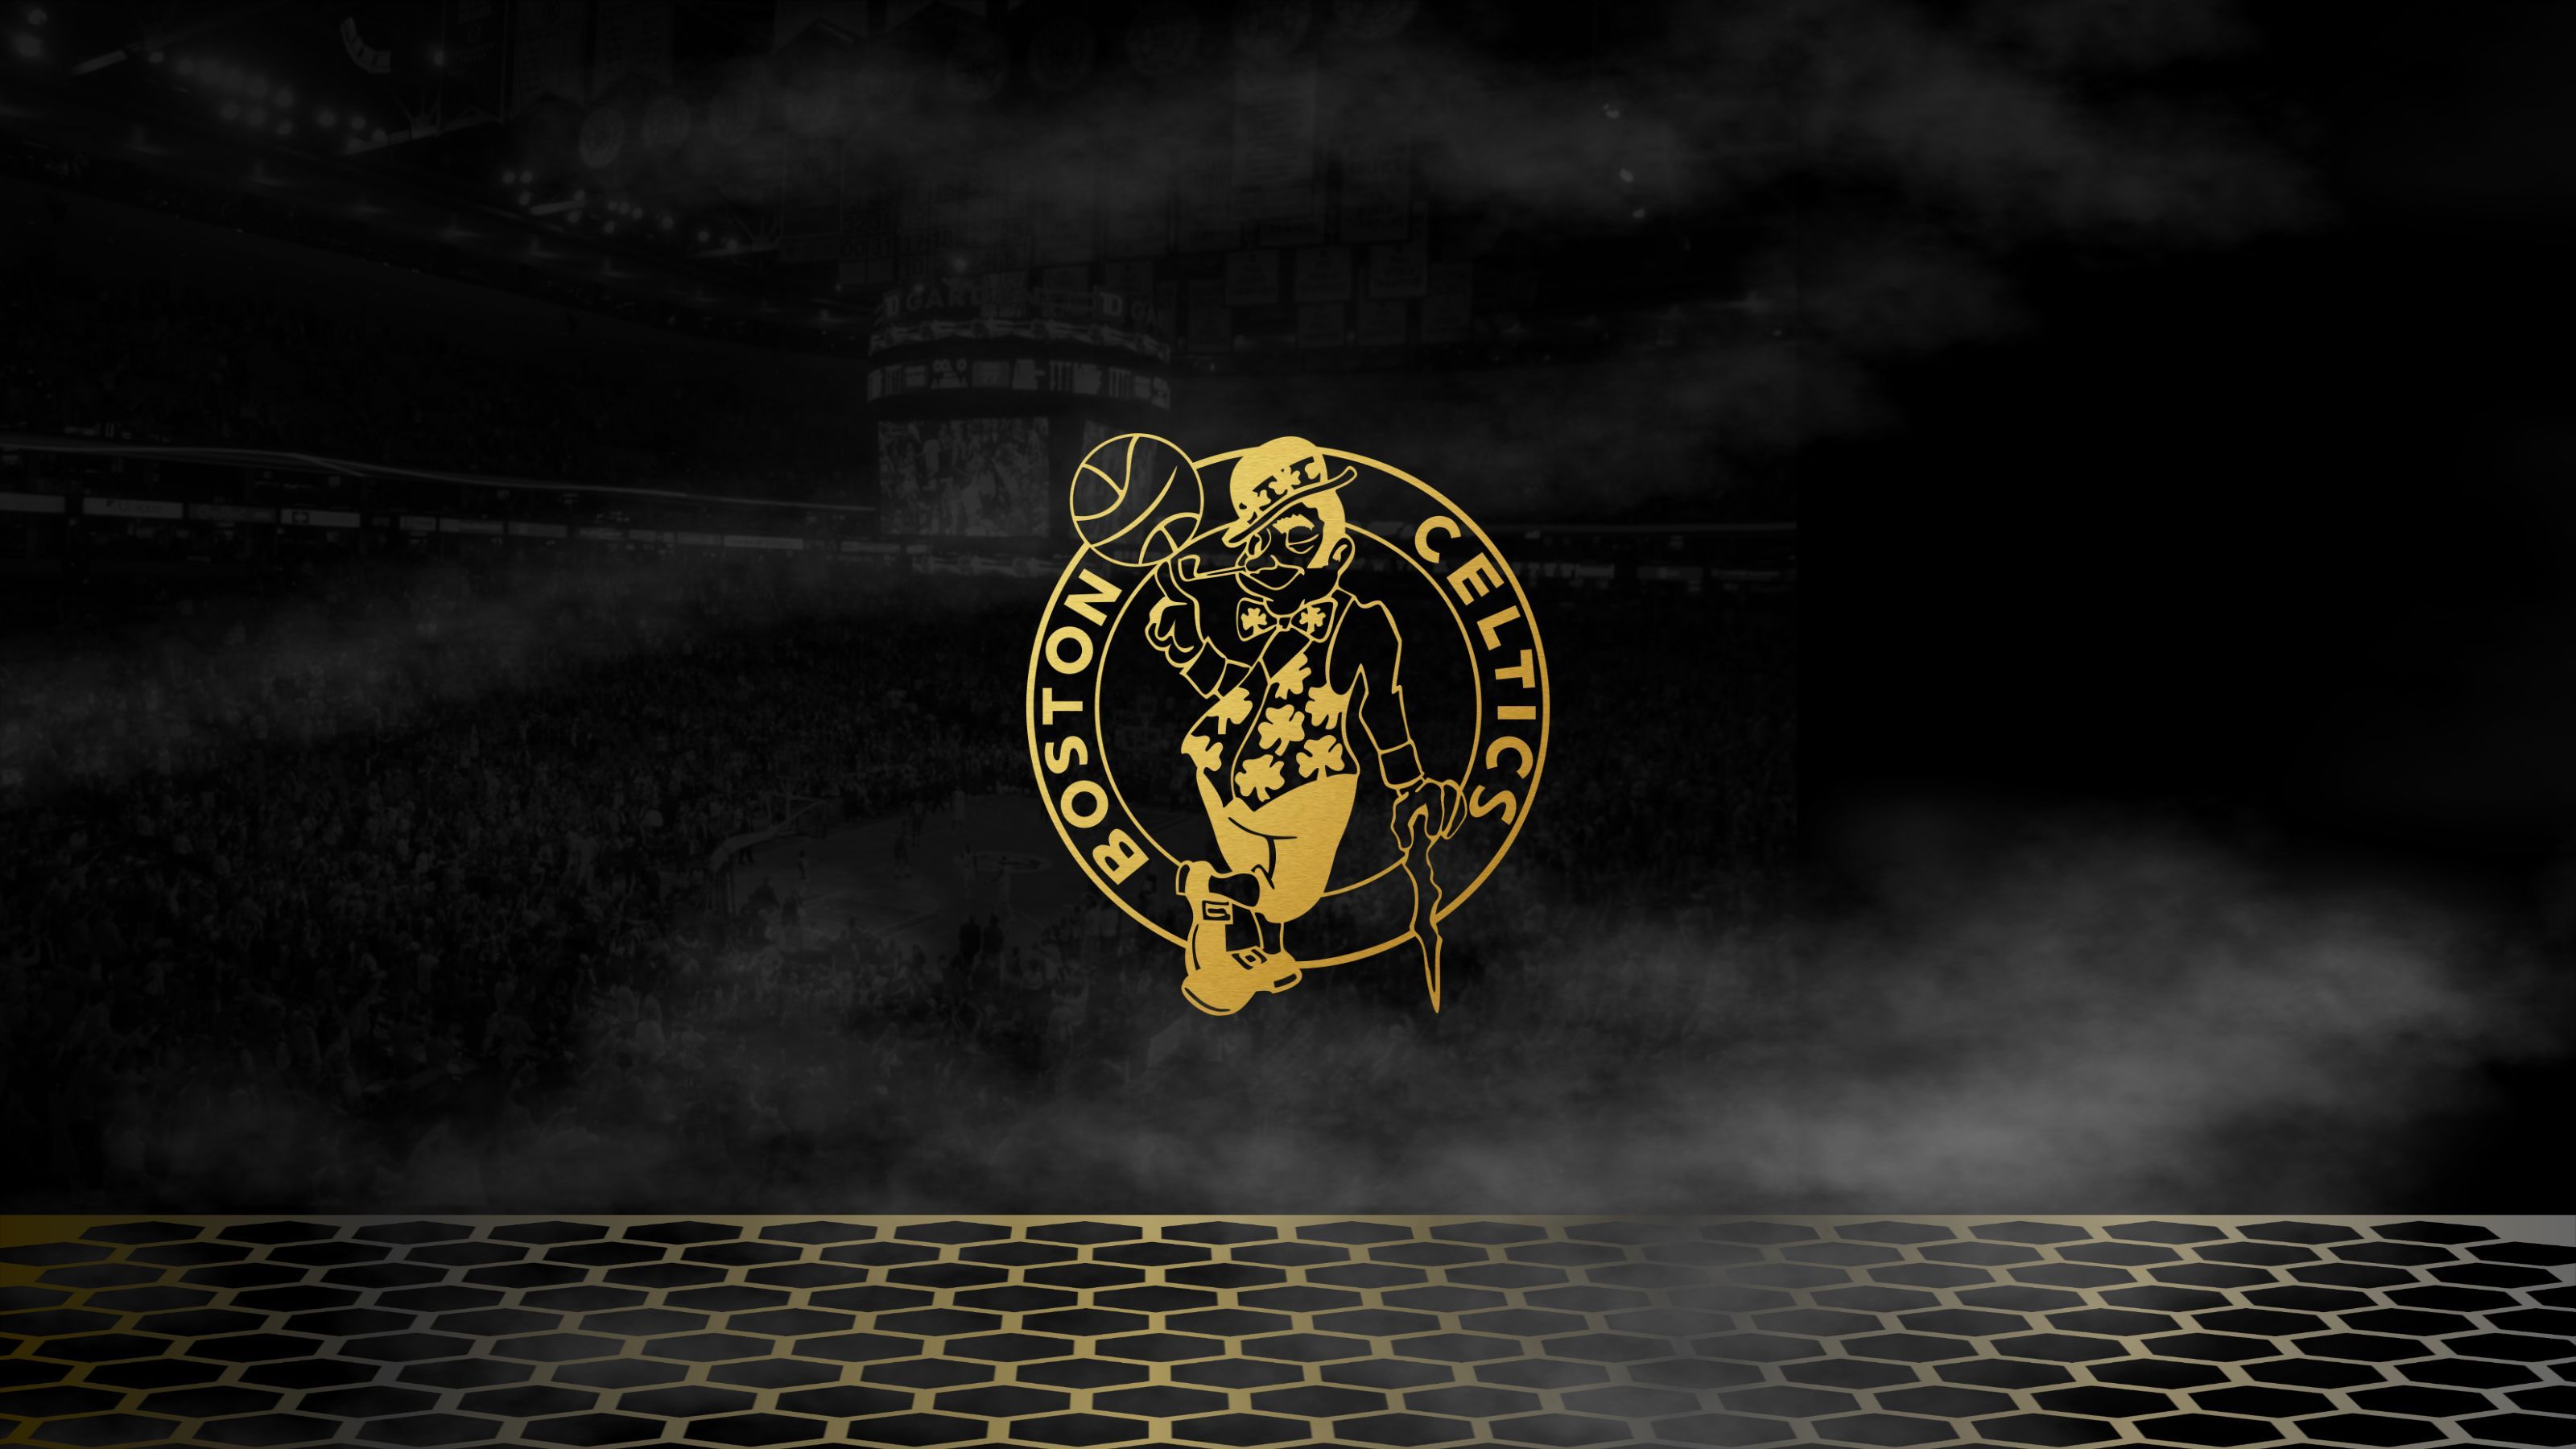 Black & Gold NBA Background For Desktop in 2020